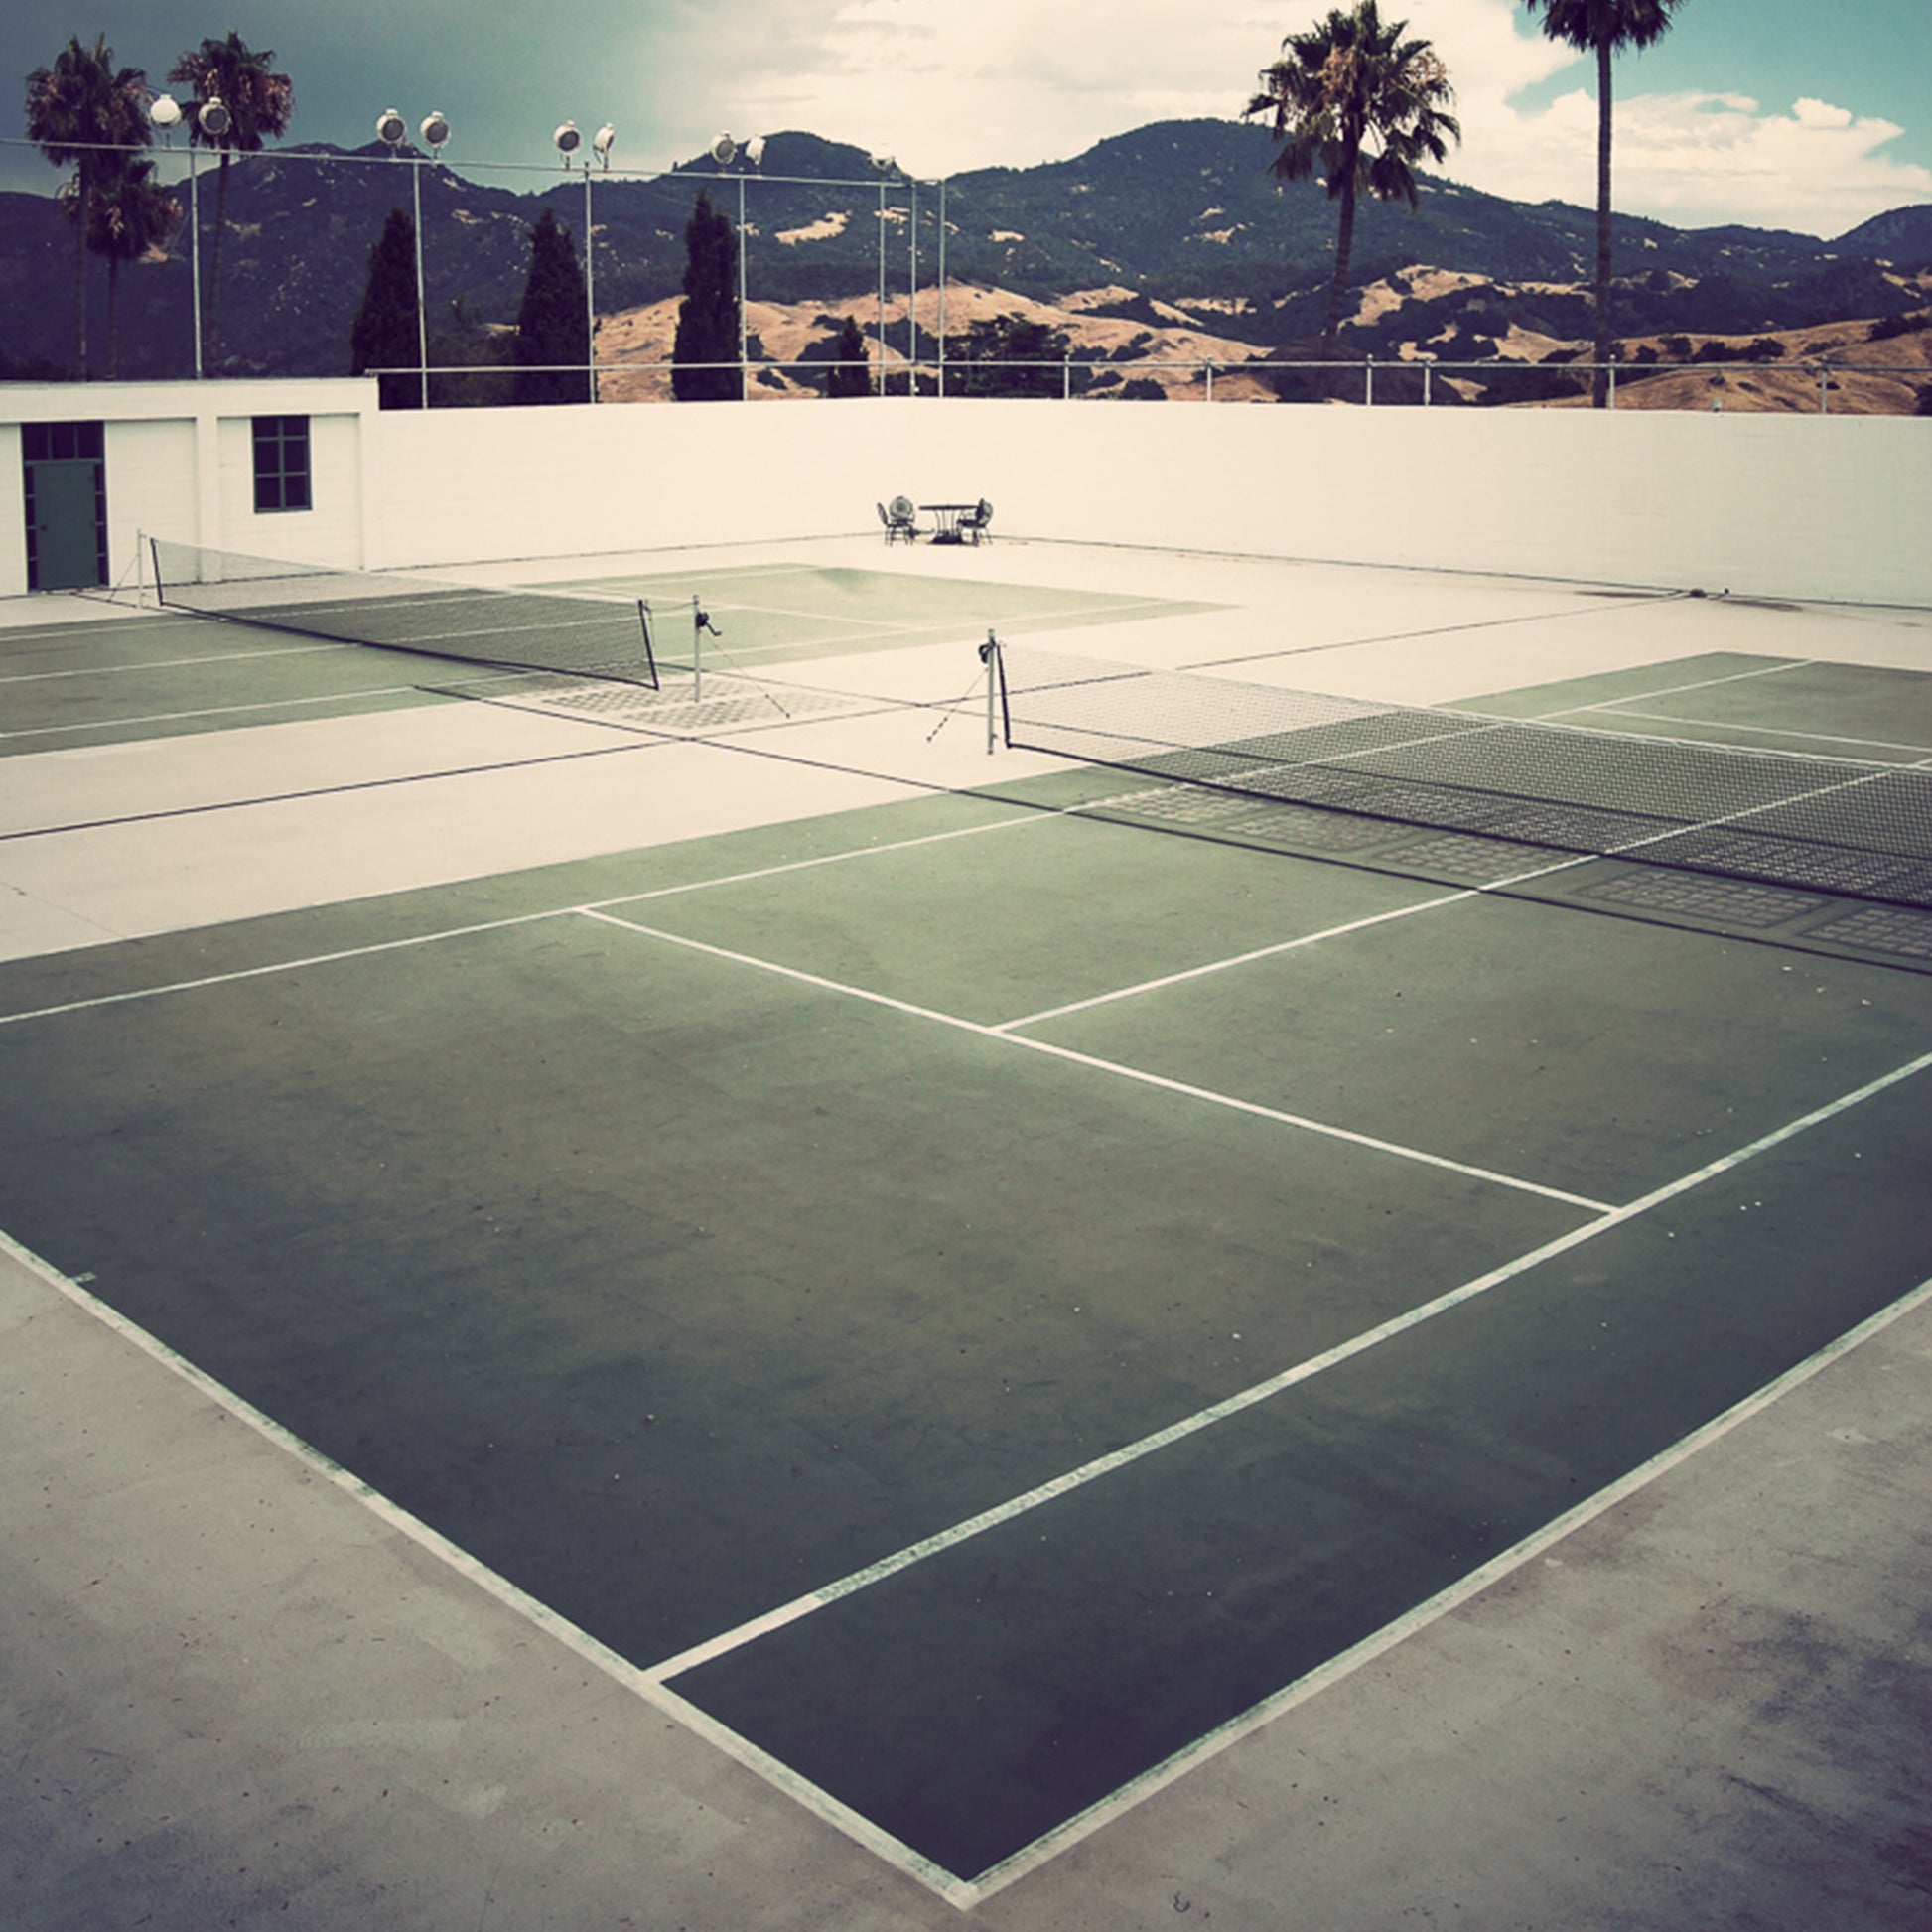 Tennis court in San Simeon, CA photograph by Sara Ferguson